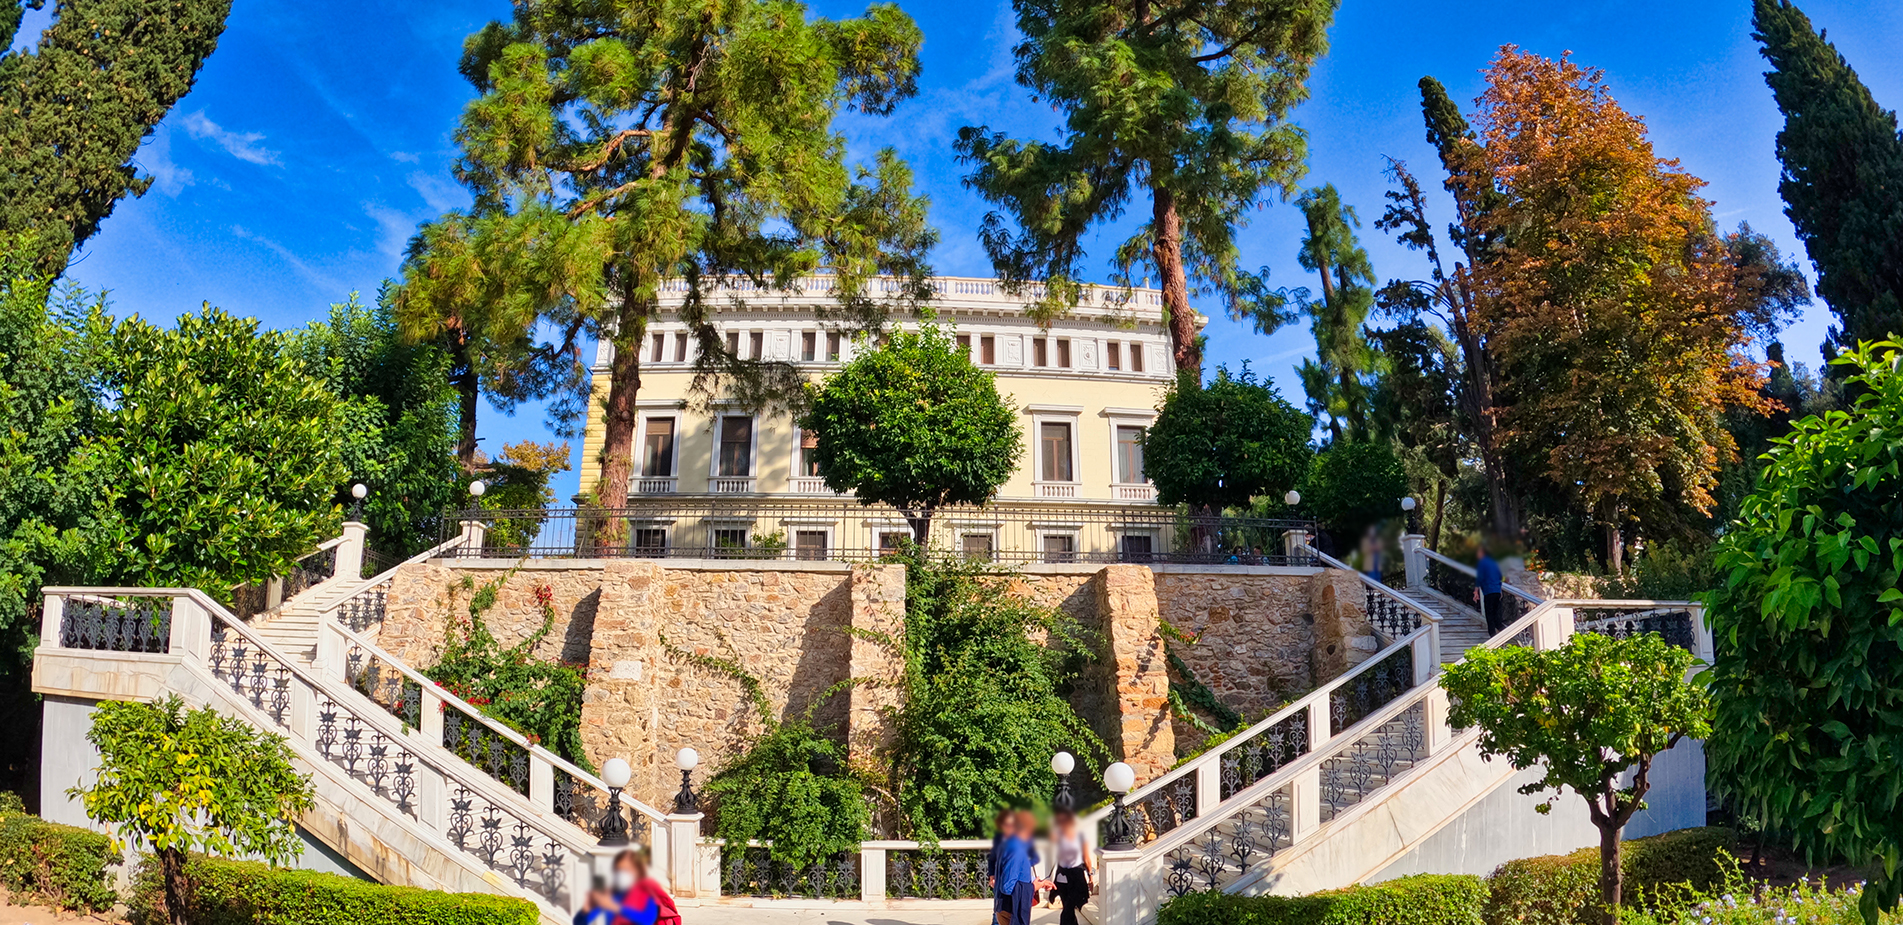 Ο κήπος του Προεδρικού Μεγάρου με τα πάνω από 140 είδη φυτών: Περπατήσαμε στην όαση που βρίσκεται στην καρδιά της Αθήνας